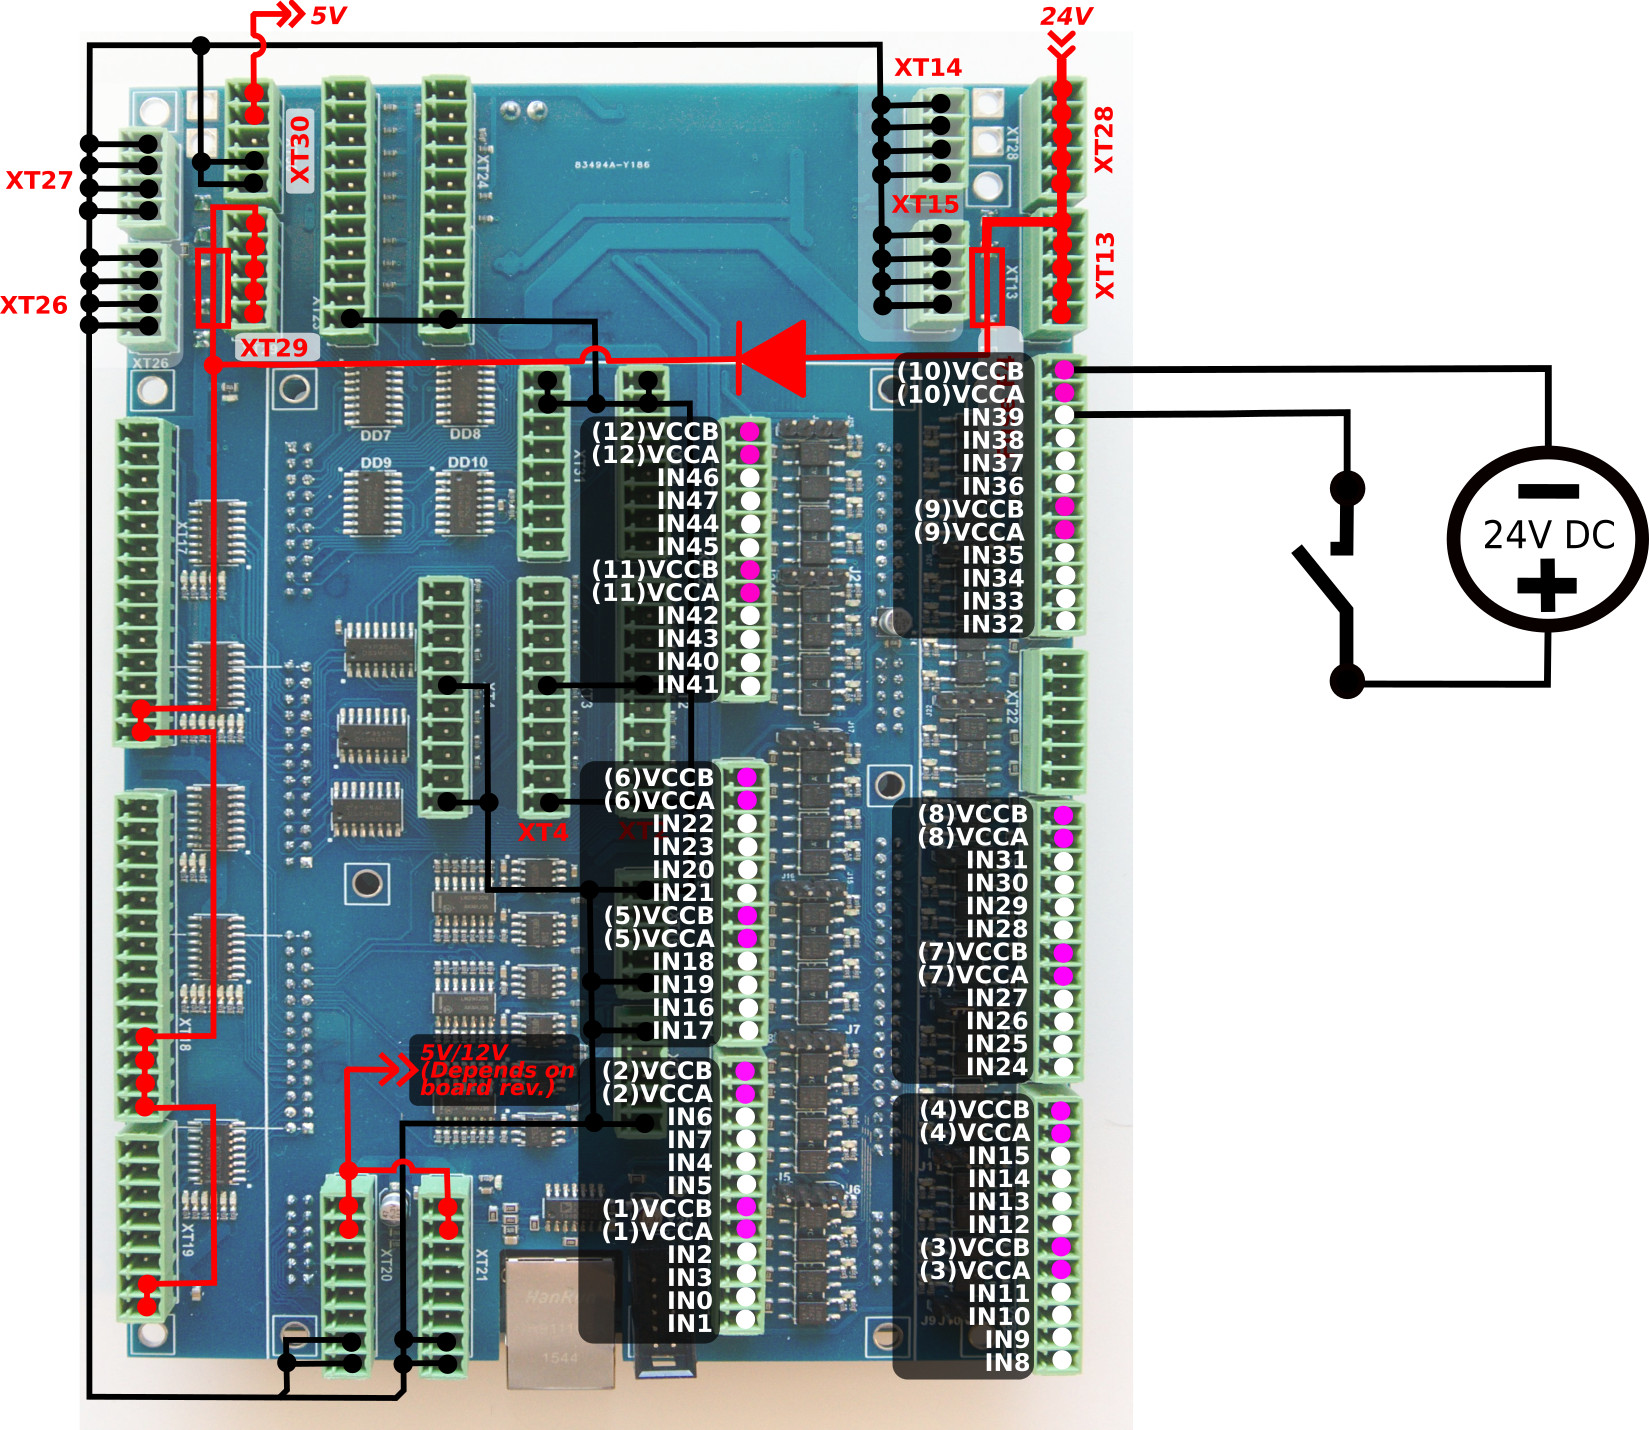 et10-connection-inputs-002-key-02-v3.jpg